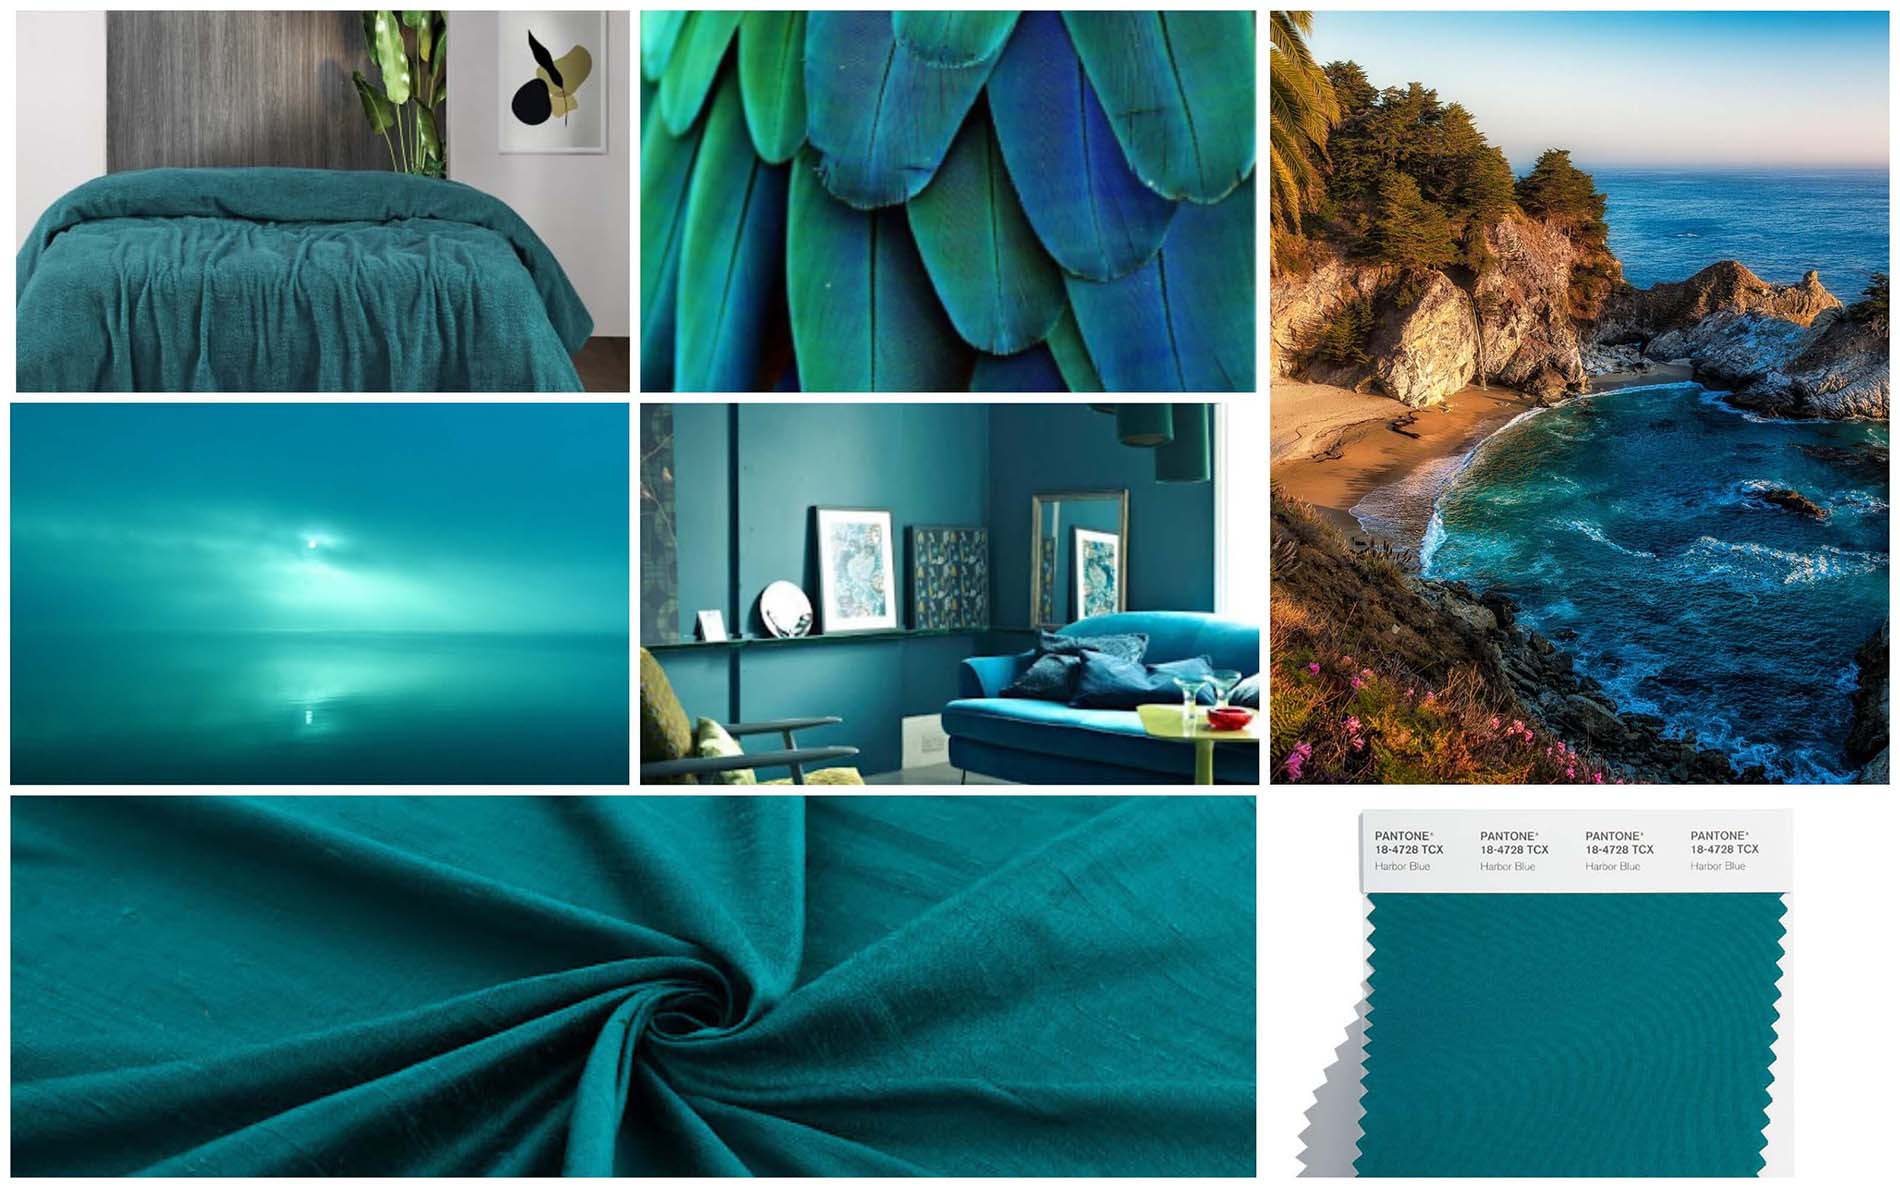 Синяя Гавань - Harbour blue, красивый сине-зеленый оттенок. Модные цвета и оттенки 2022 Пантон - палитра весна лета 2022 по версии института цвета